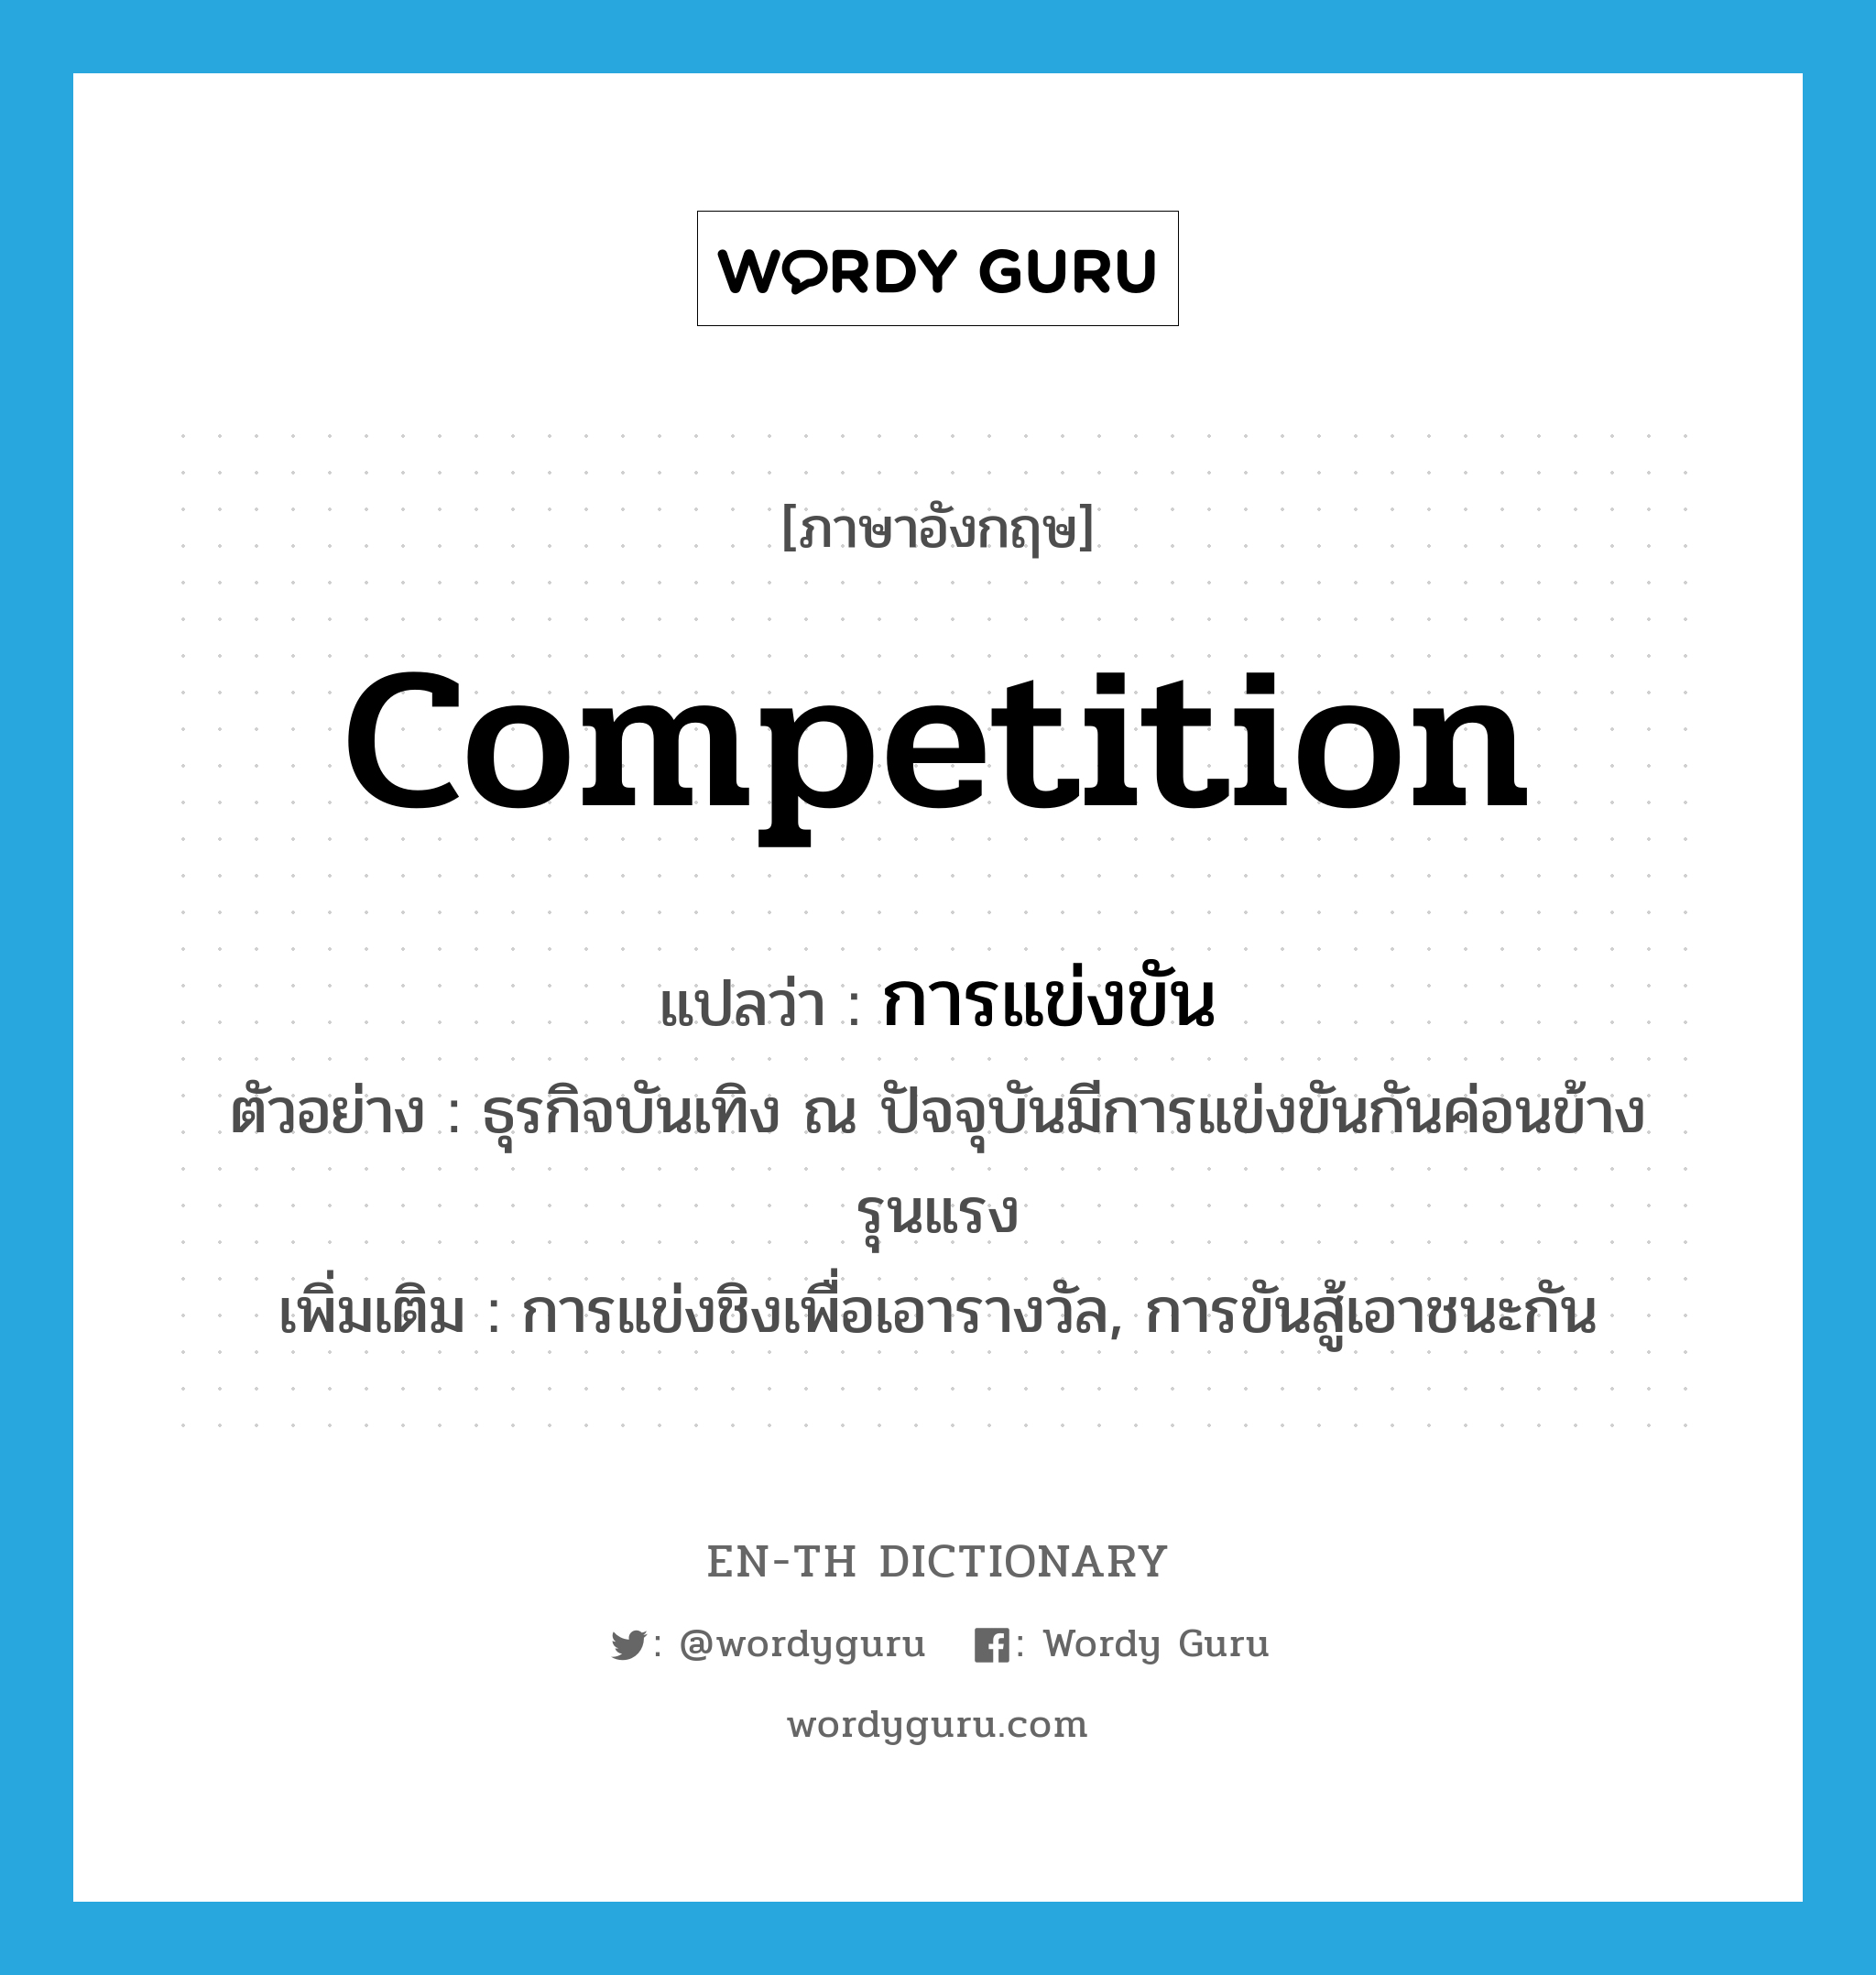 competition แปลว่า?, คำศัพท์ภาษาอังกฤษ competition แปลว่า การแข่งขัน ประเภท N ตัวอย่าง ธุรกิจบันเทิง ณ ปัจจุบันมีการแข่งขันกันค่อนข้างรุนแรง เพิ่มเติม การแข่งชิงเพื่อเอารางวัล, การขันสู้เอาชนะกัน หมวด N